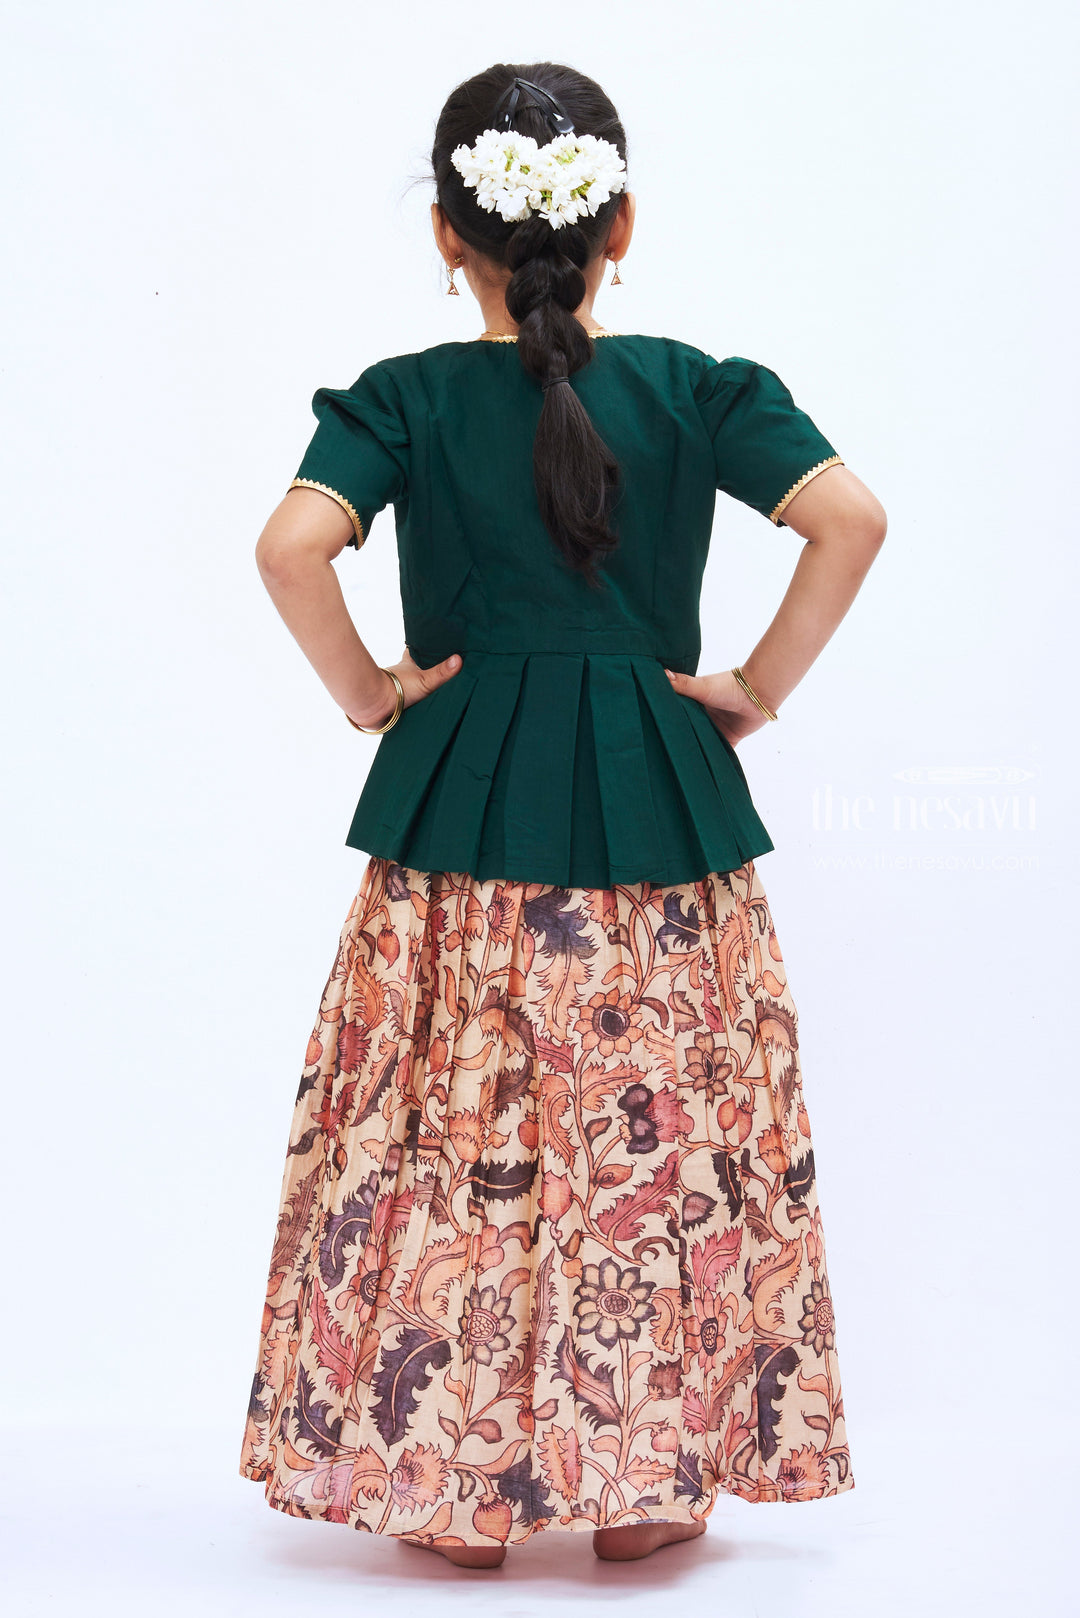 The Nesavu Girls Silk Gown Verdant Vogue: Green Silk Anarkali Dress with Floral Skirt for Girls Nesavu Girls Emerald Silk Anarkali Dress with Floral Skirt | The Nesavu